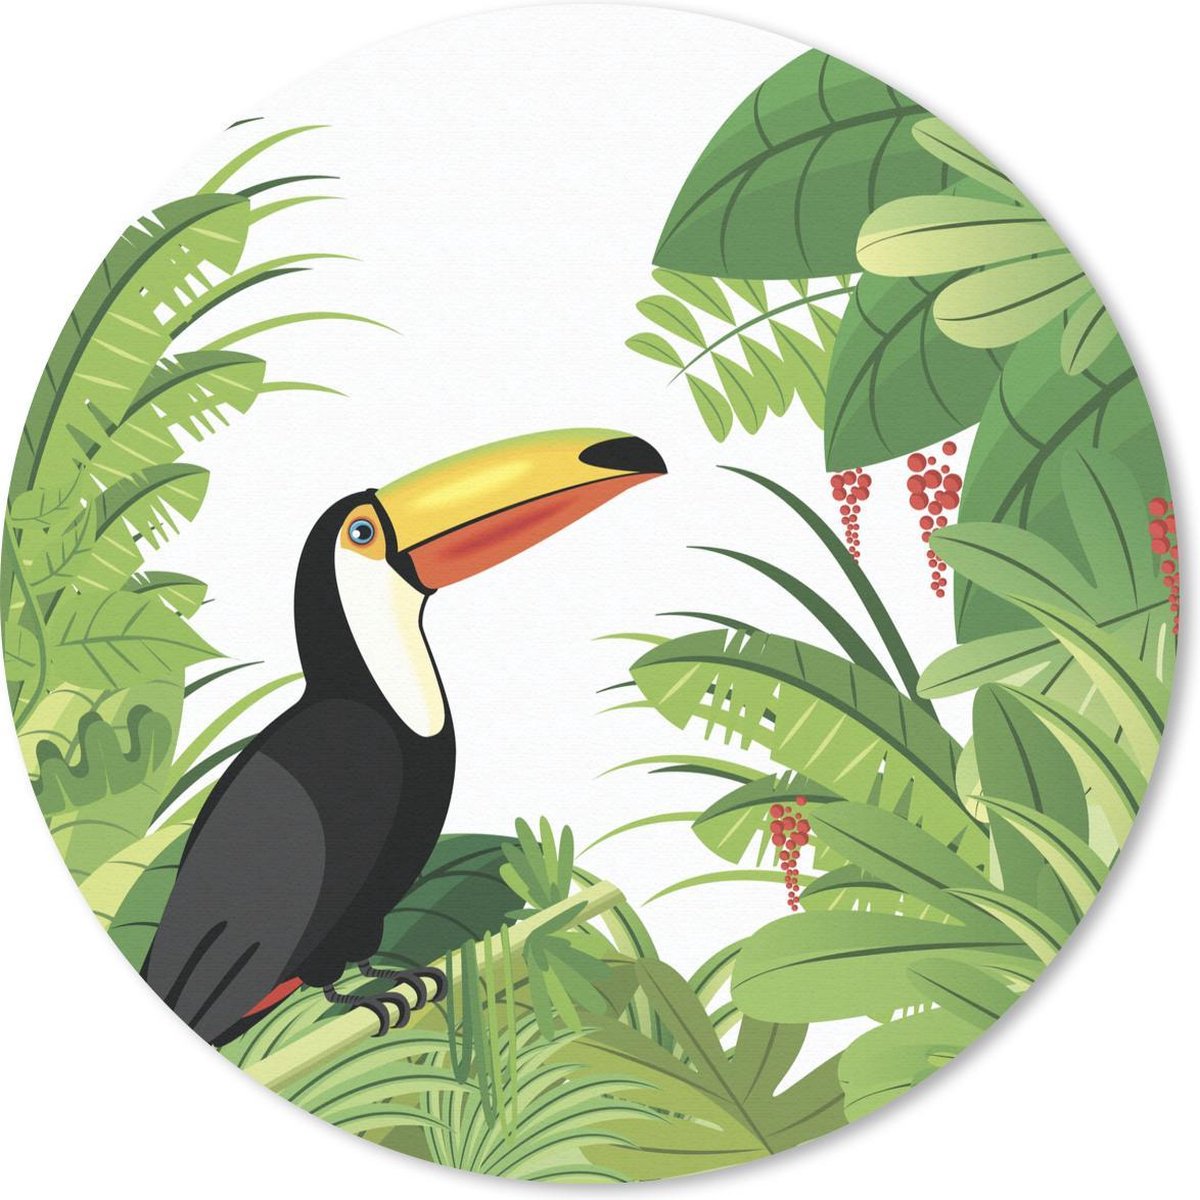 Muismat - Mousepad - Rond - Vector illustratie van een toekan en een tropisch regenwoud - 50x50 cm - Ronde muismat